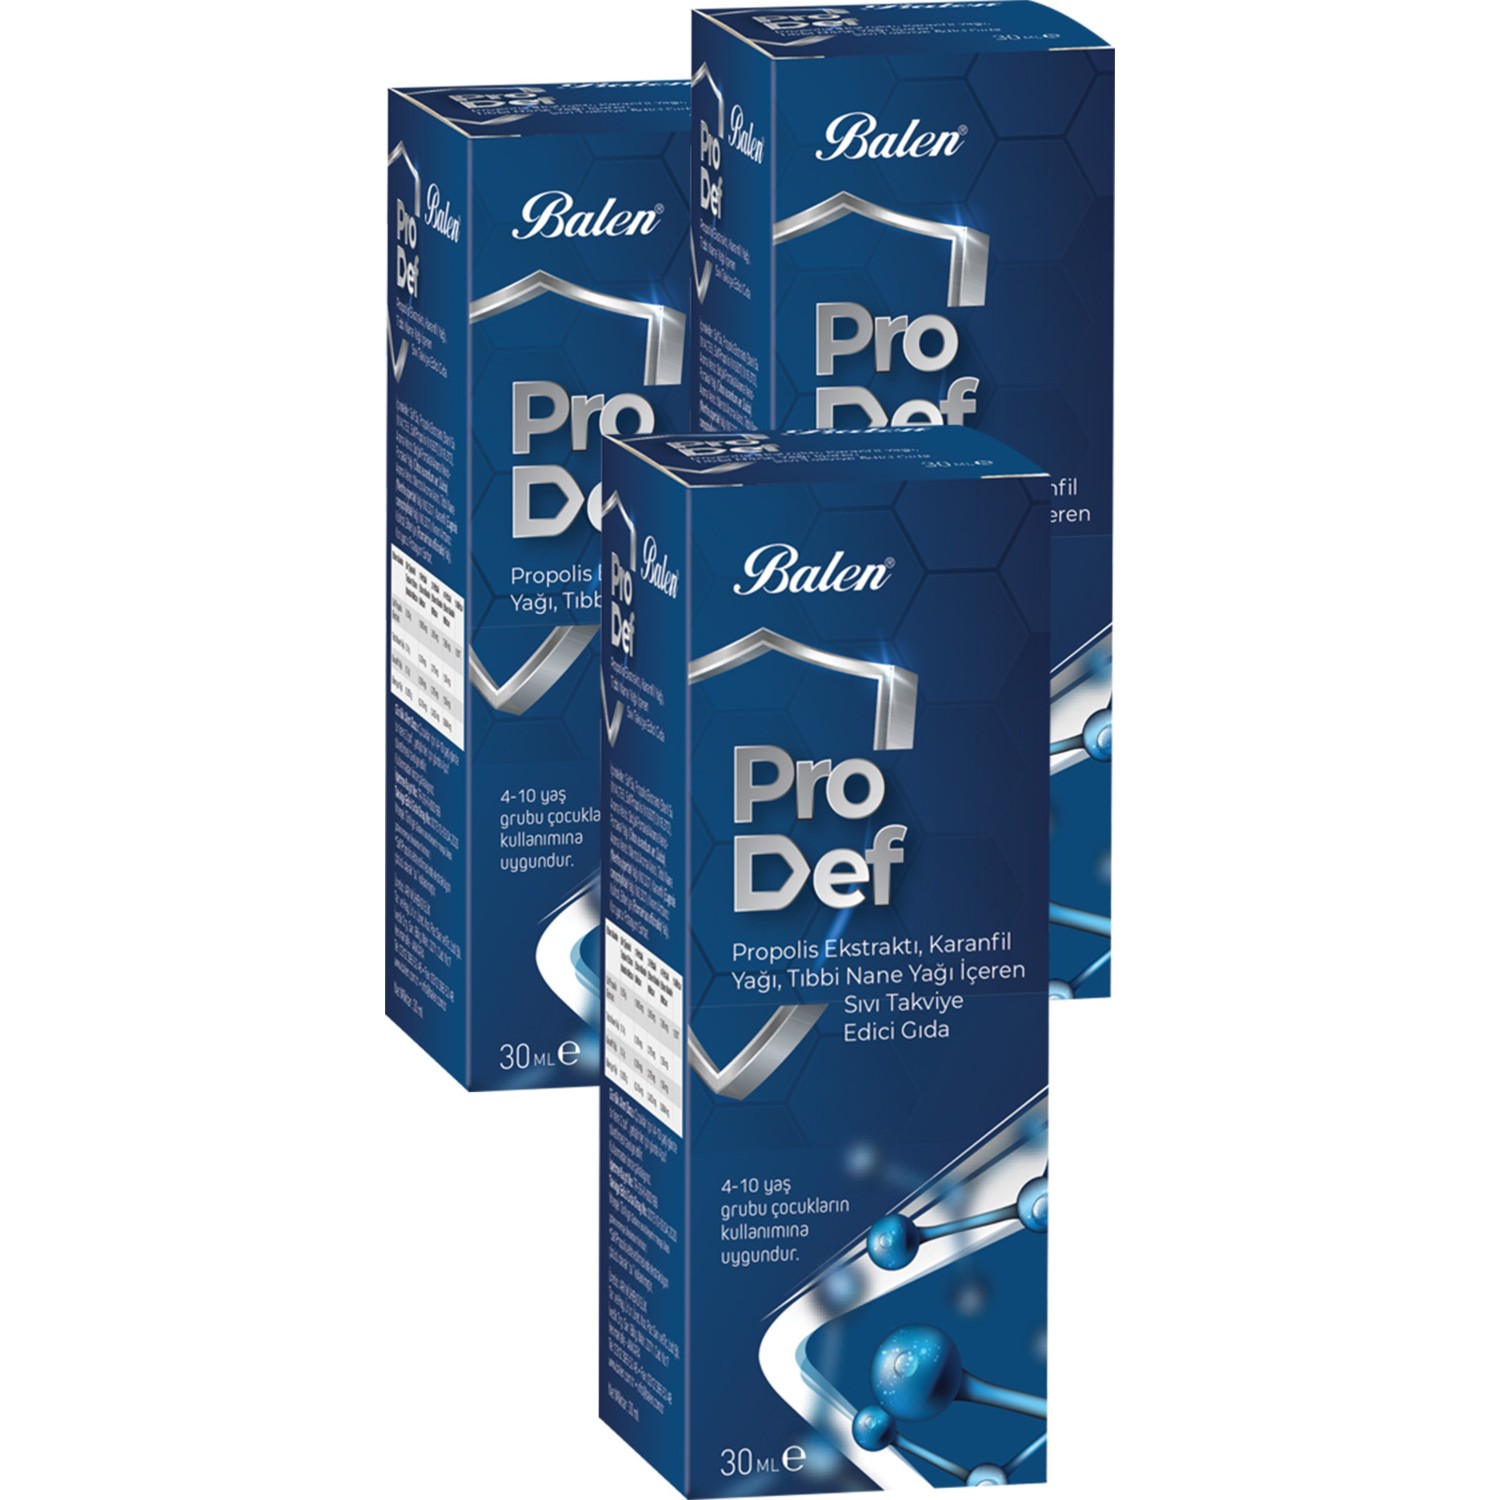 Спрей для горла с экстрактом прополиса Balen Pro Def Spray Supplement, 3 упаковки по 30 мл реко реко гуиро sonor